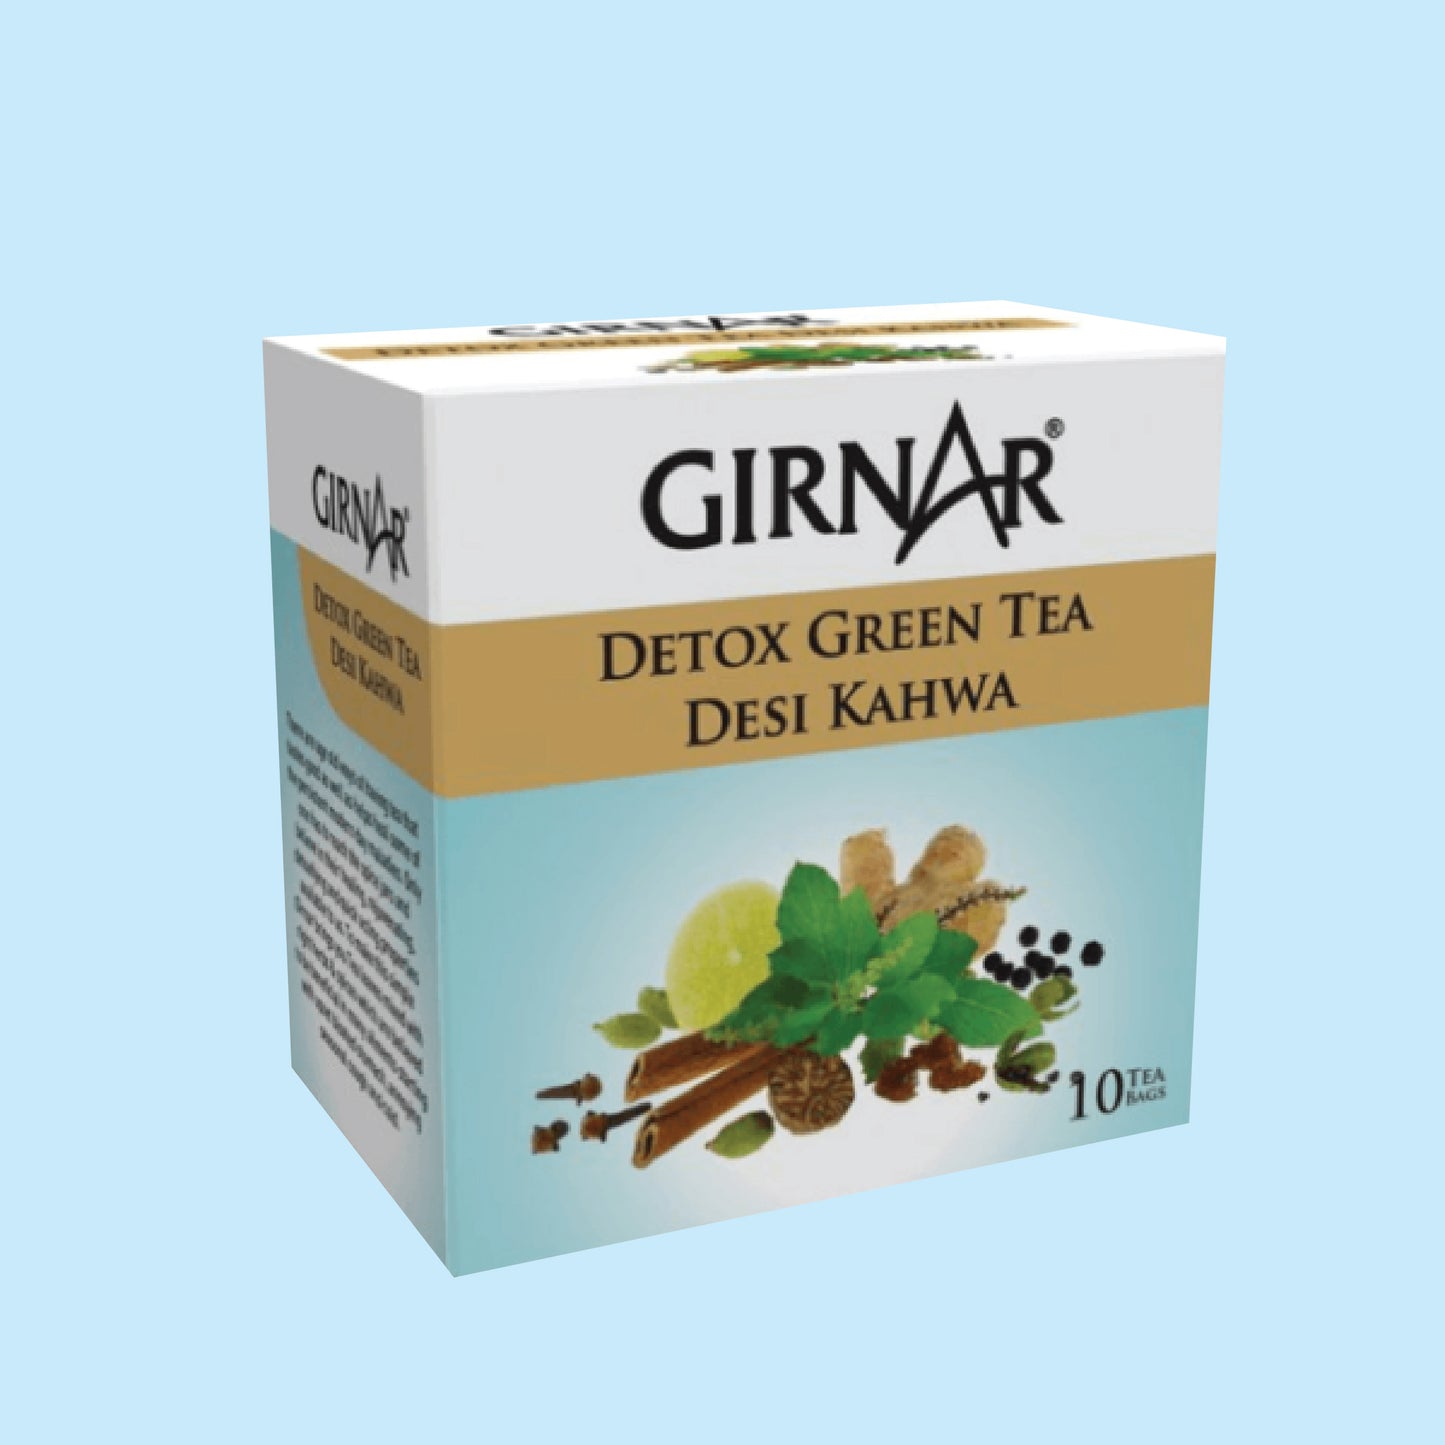 Girnar Detox Tea Bags